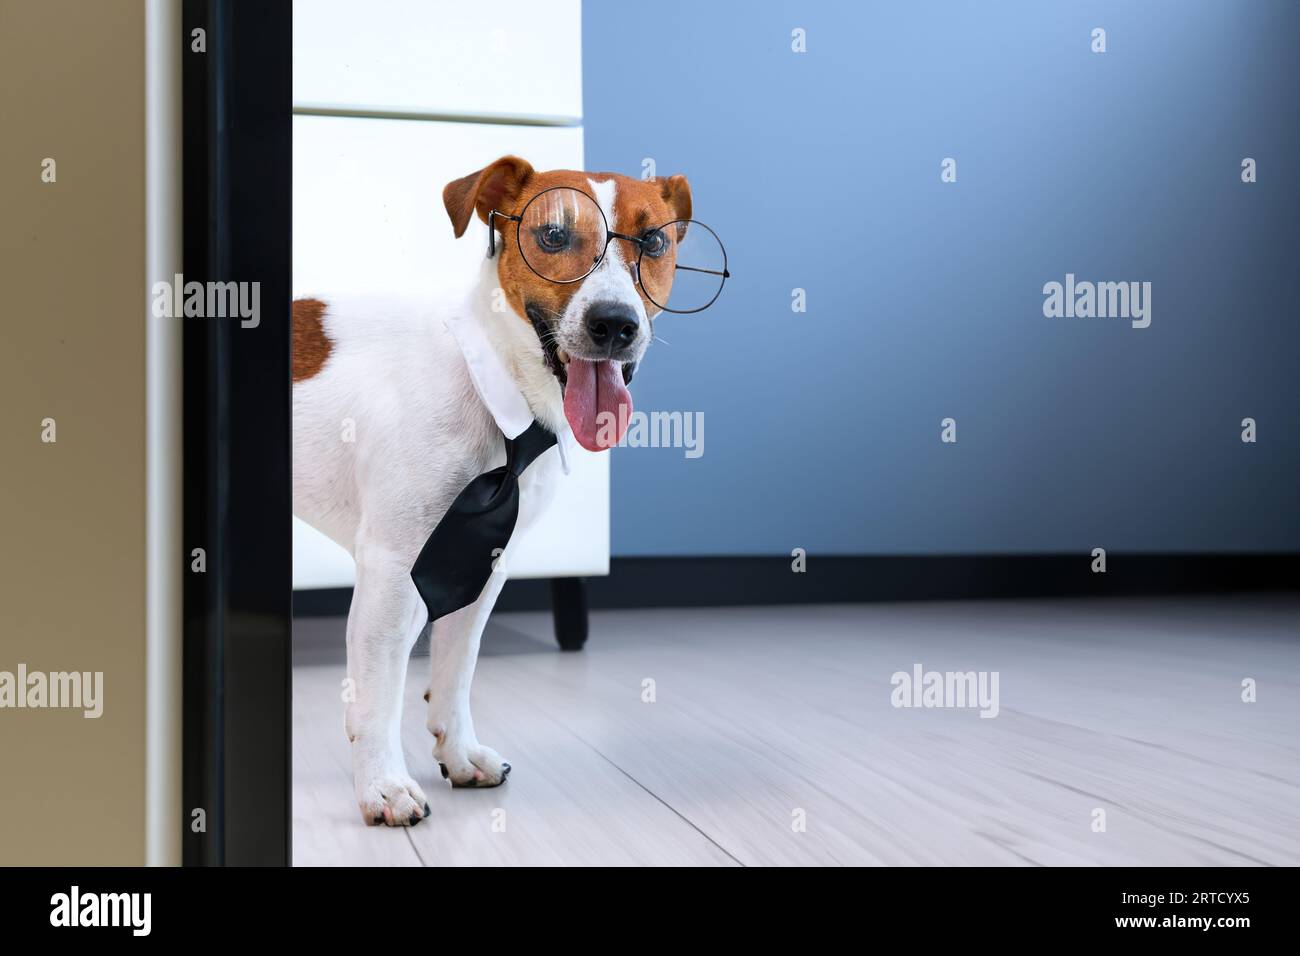 Dog Jack russell Terrier, Smart Business Dog, der eine Brille und eine Krawatte trägt, die aus dem Büro hinausblickt. Humorvolle Darstellung eines Boss-Haustiers. Stockfoto